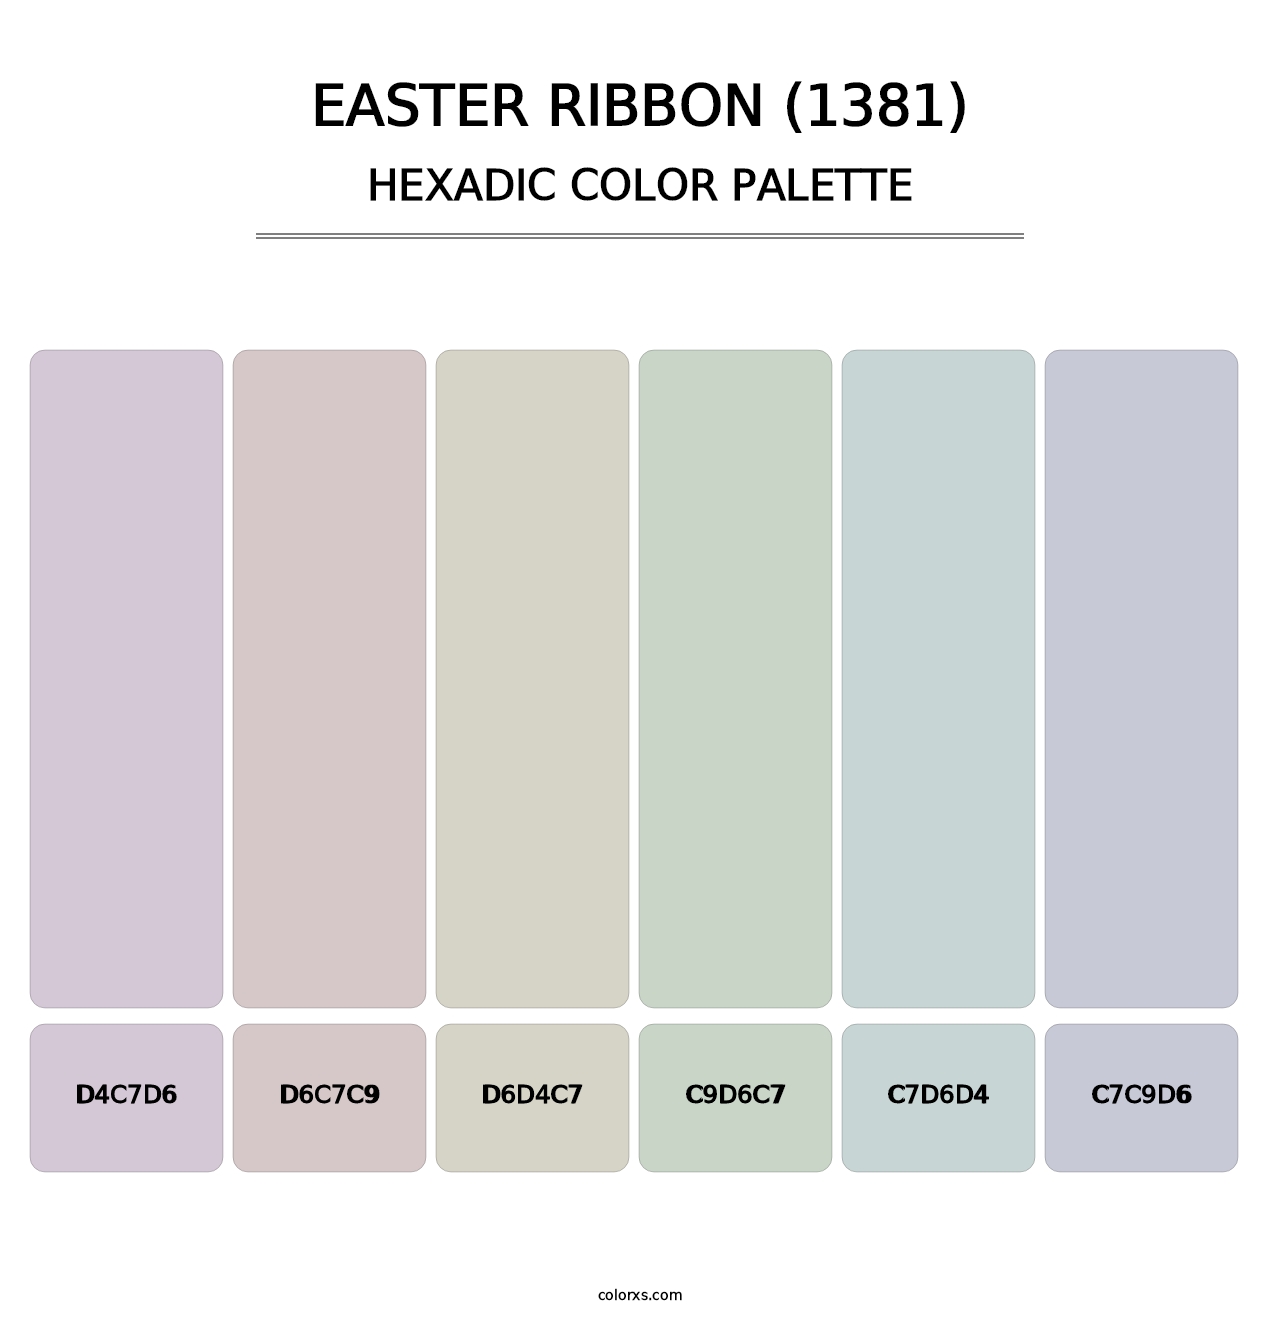 Easter Ribbon (1381) - Hexadic Color Palette